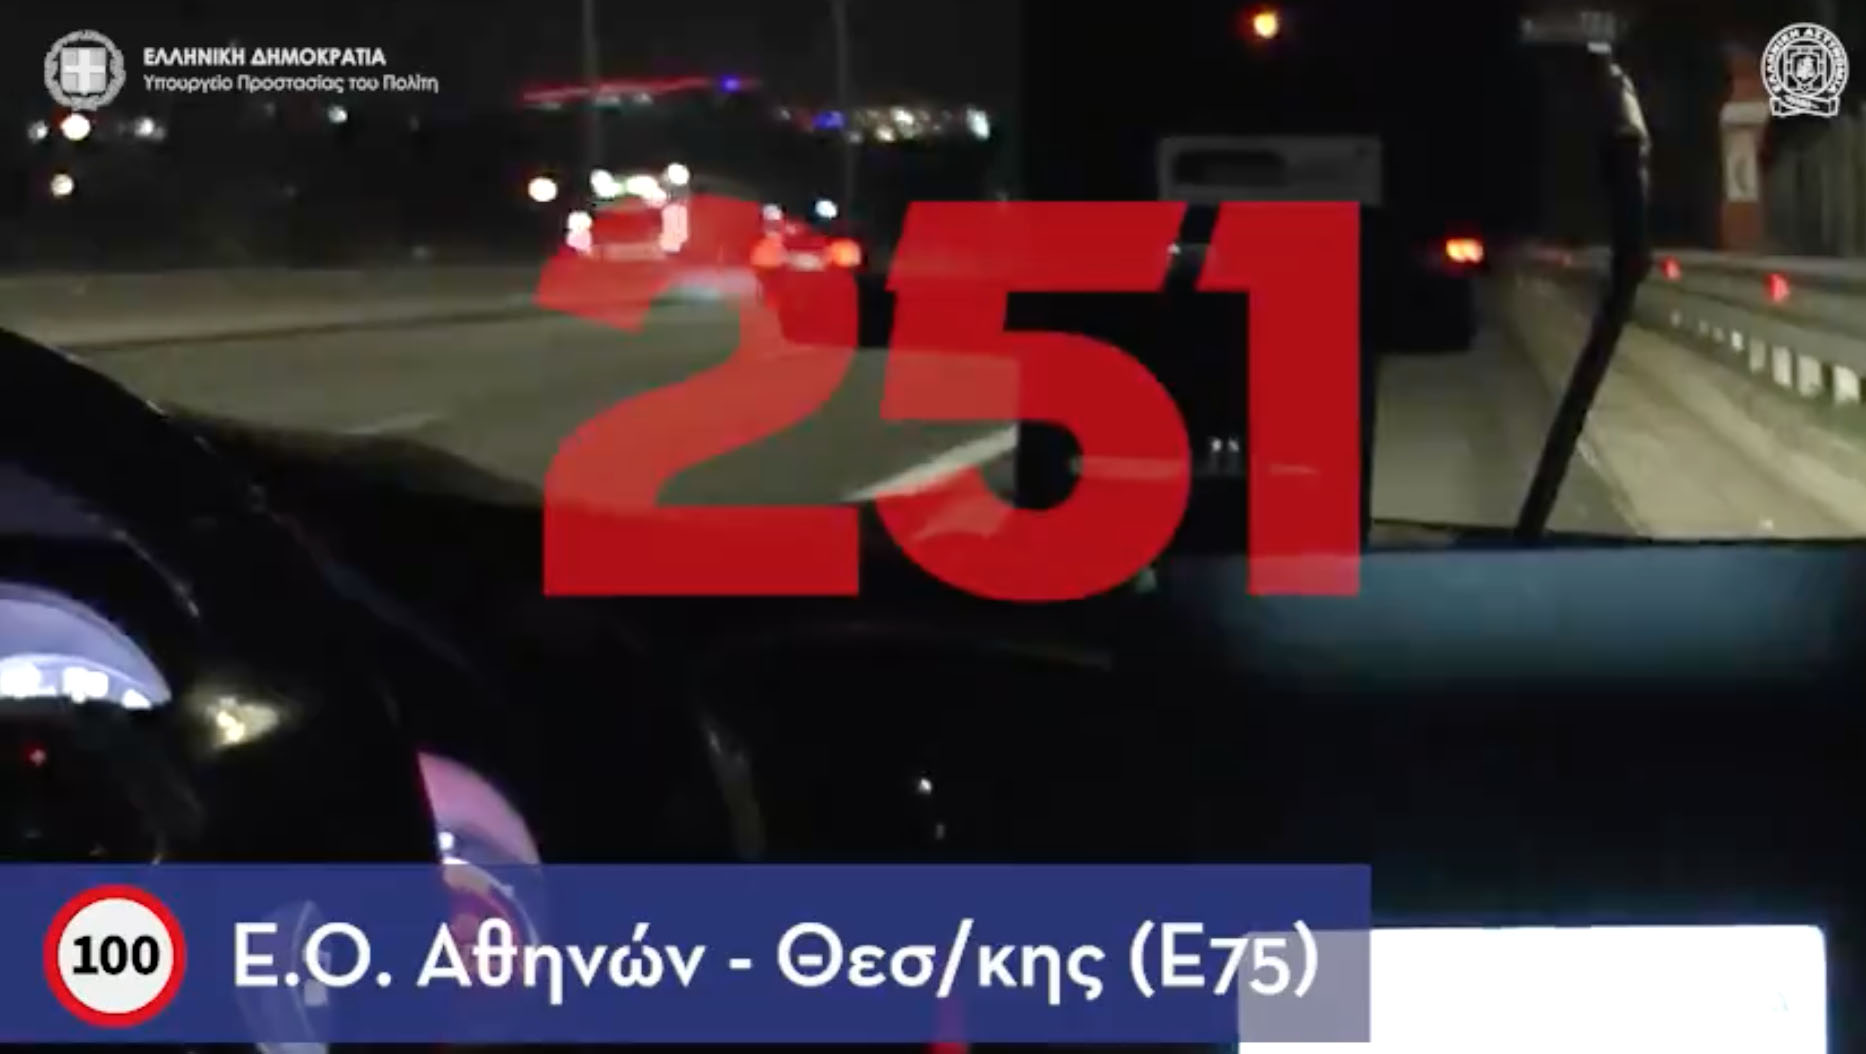 Έτρεχε στην Αθηνών – Θεσσαλονίκης με 250 χιλιόμετρα! Βίντεο με ταχύτητες που ζαλίζουν σε κεντρικές λεωφόρους της Αθήνας